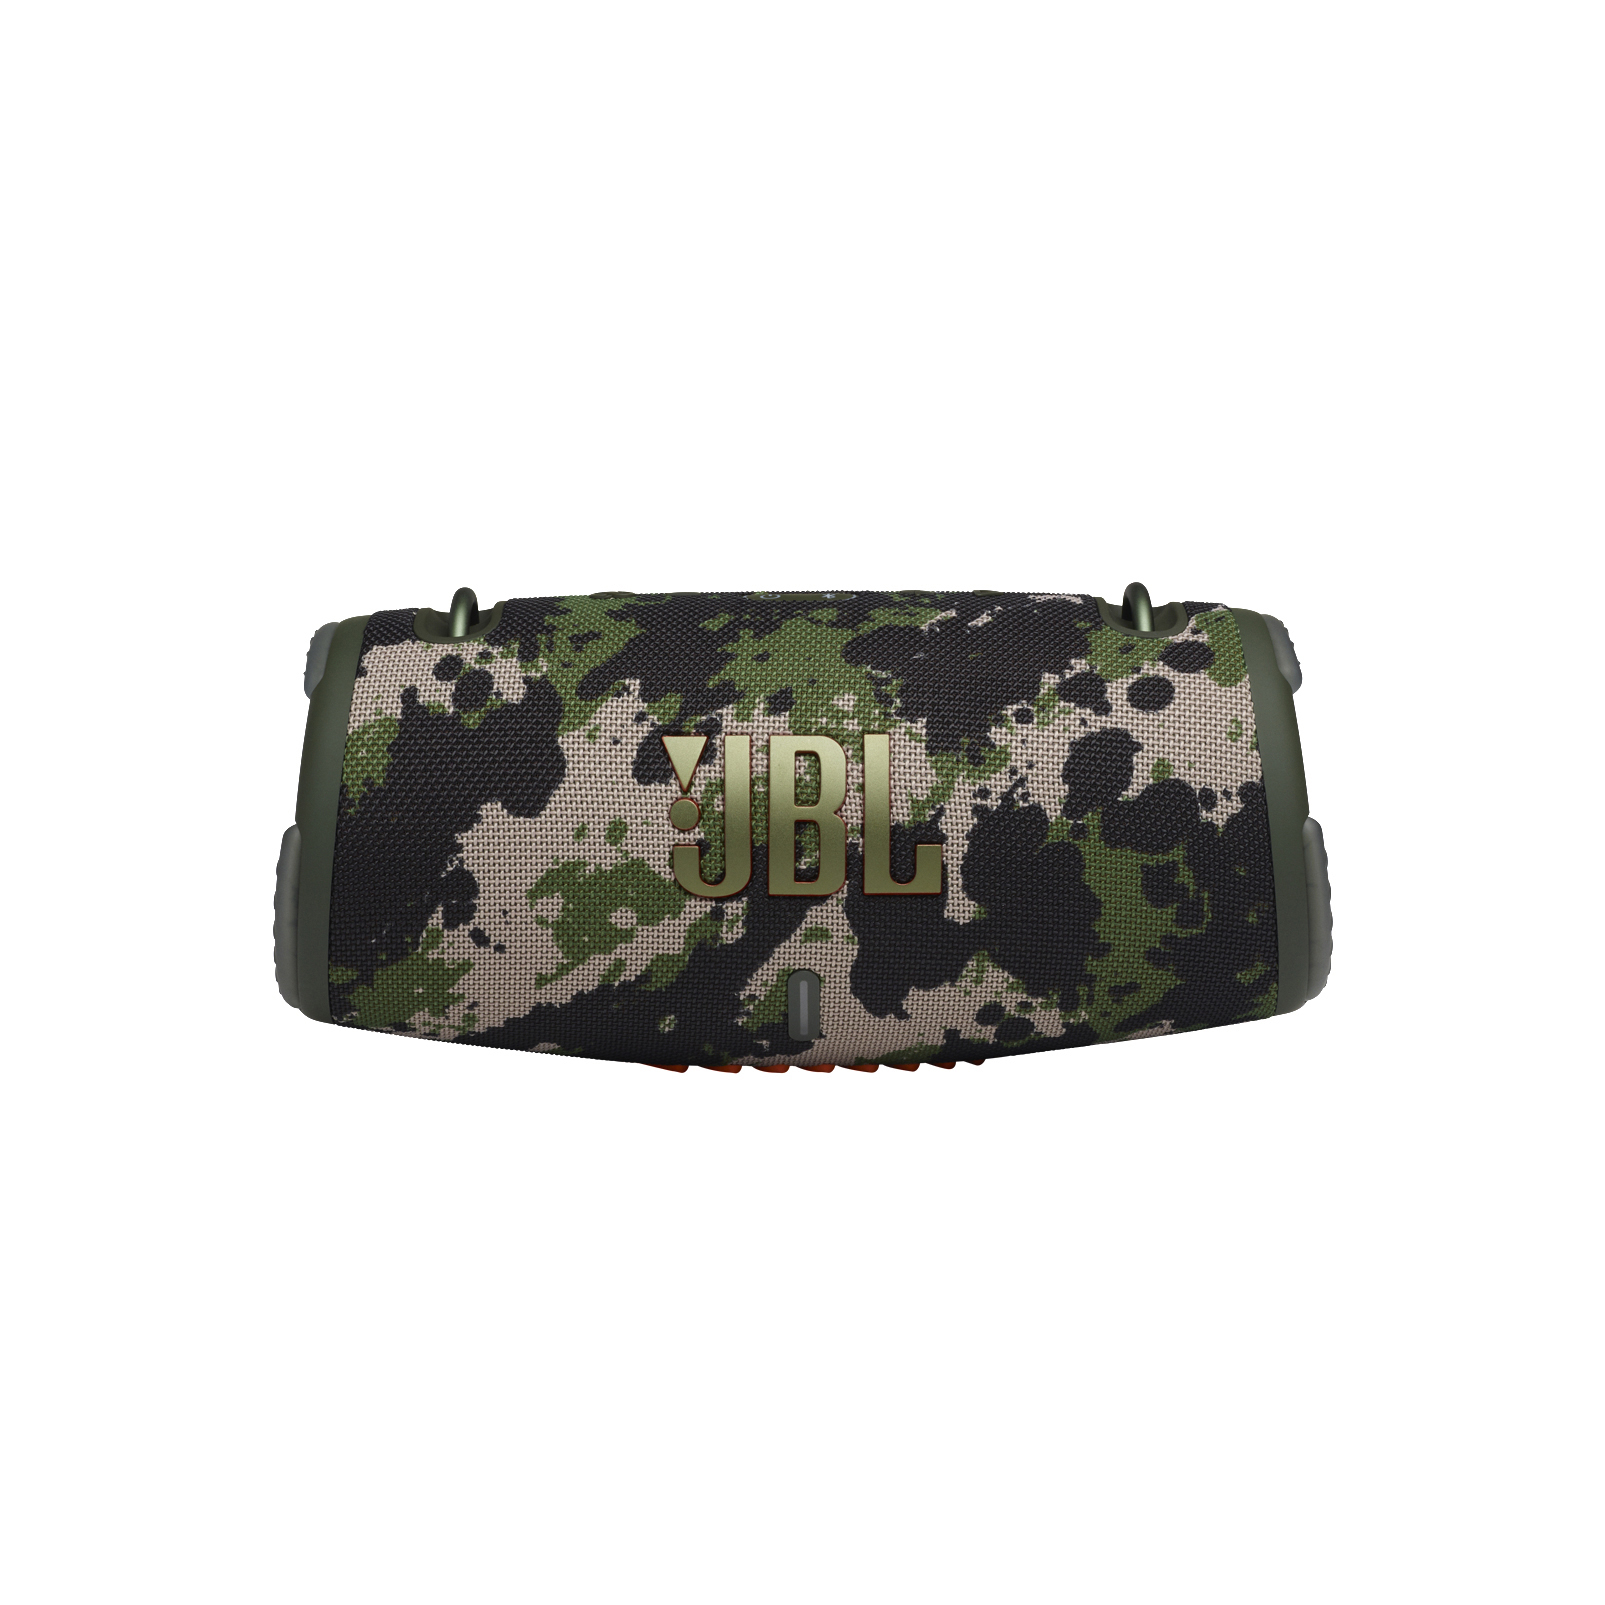 Wasserfest Xtreme3 JBL Camouflage, Bluetooth Lautsprecher,